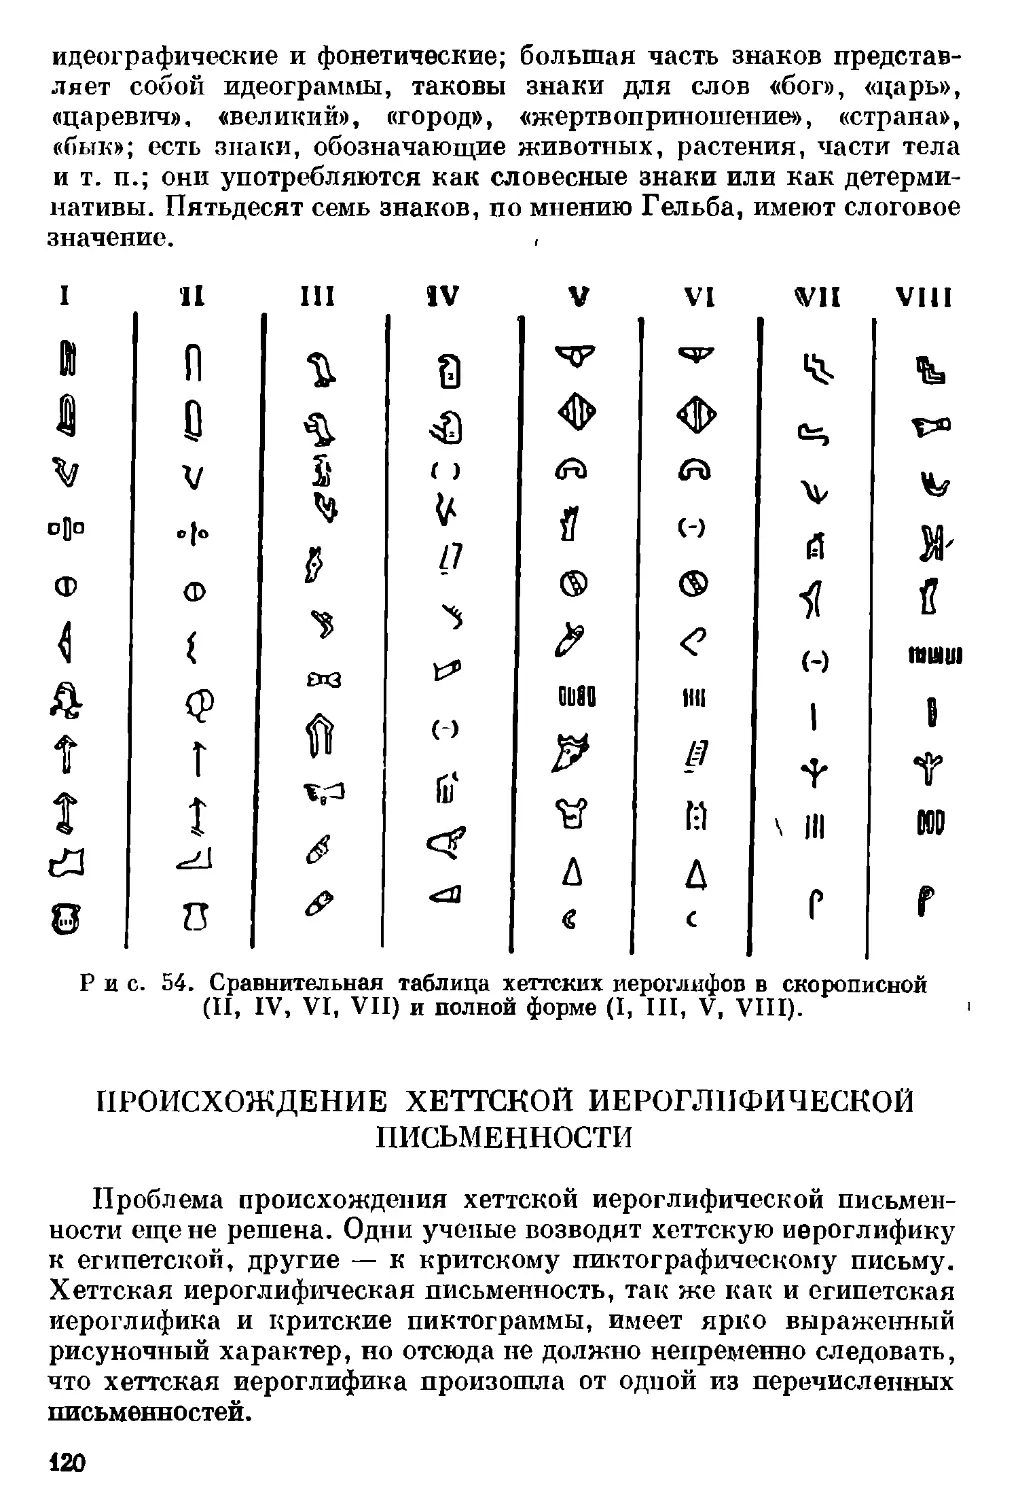 Происхождение хеттской иероглифической письменности